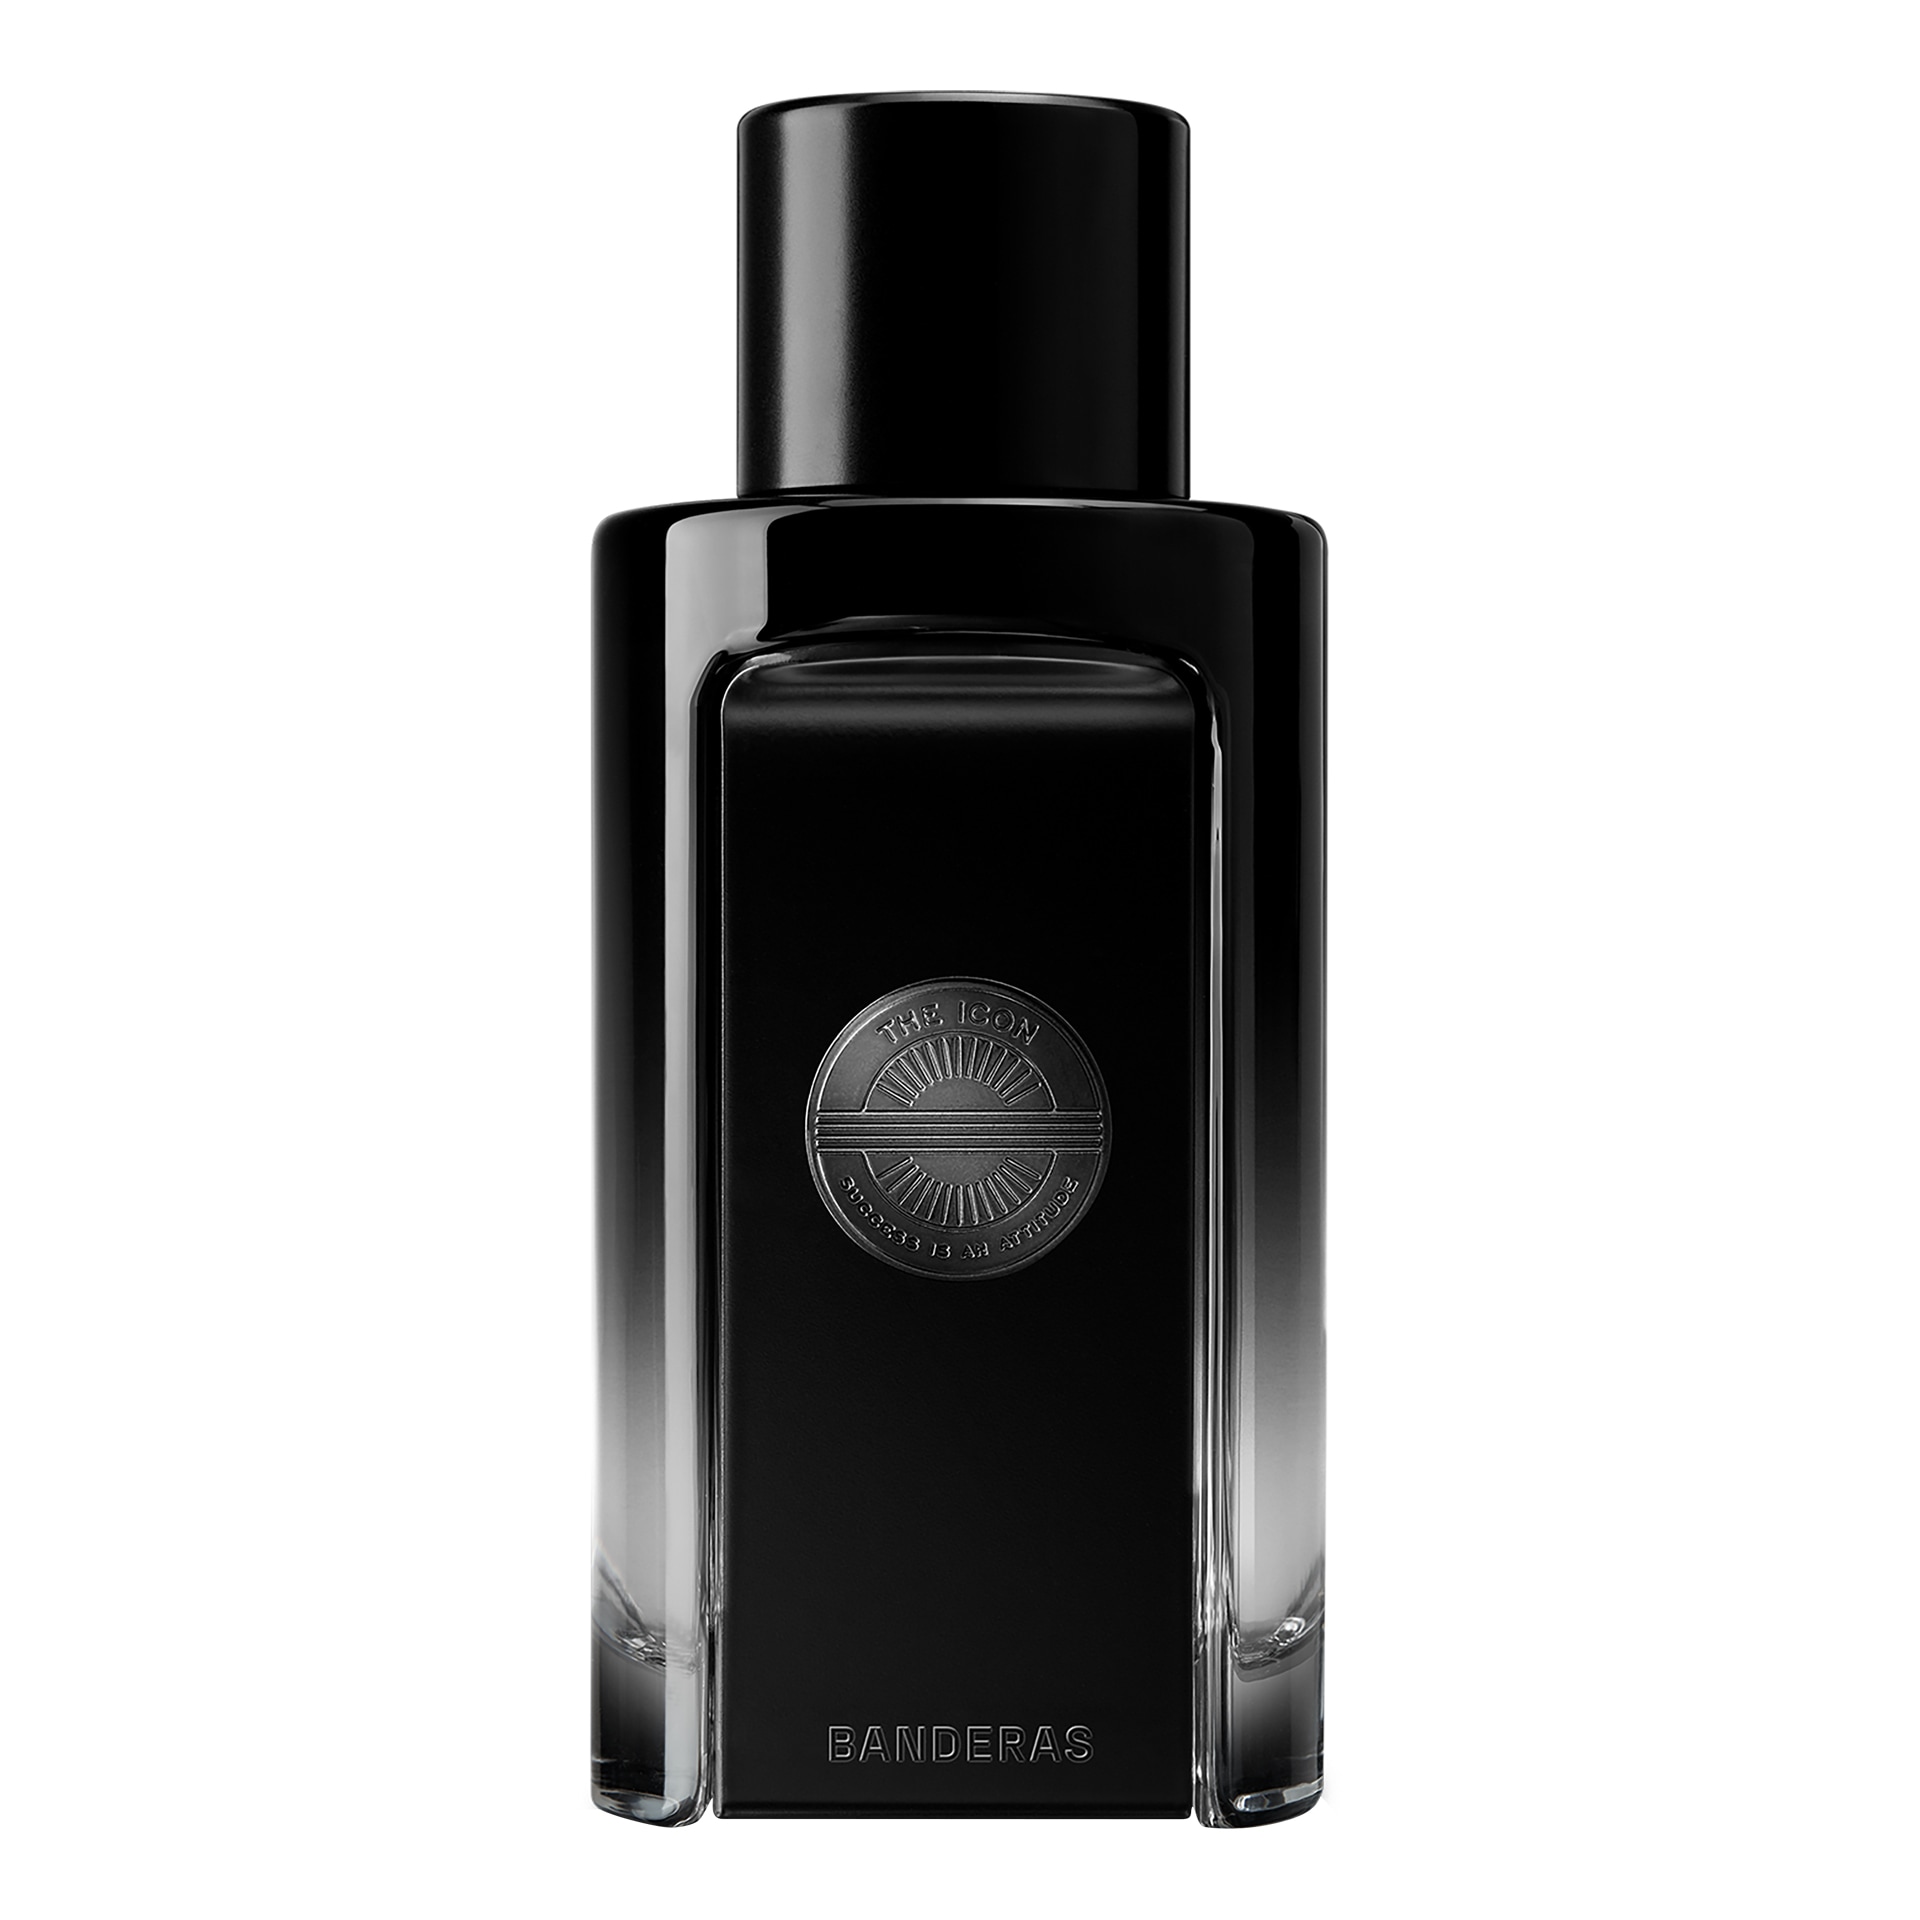 Вода парфюмерная Banderas The Icon Perfume, 100 мл antonio banderas the icon elixir 100